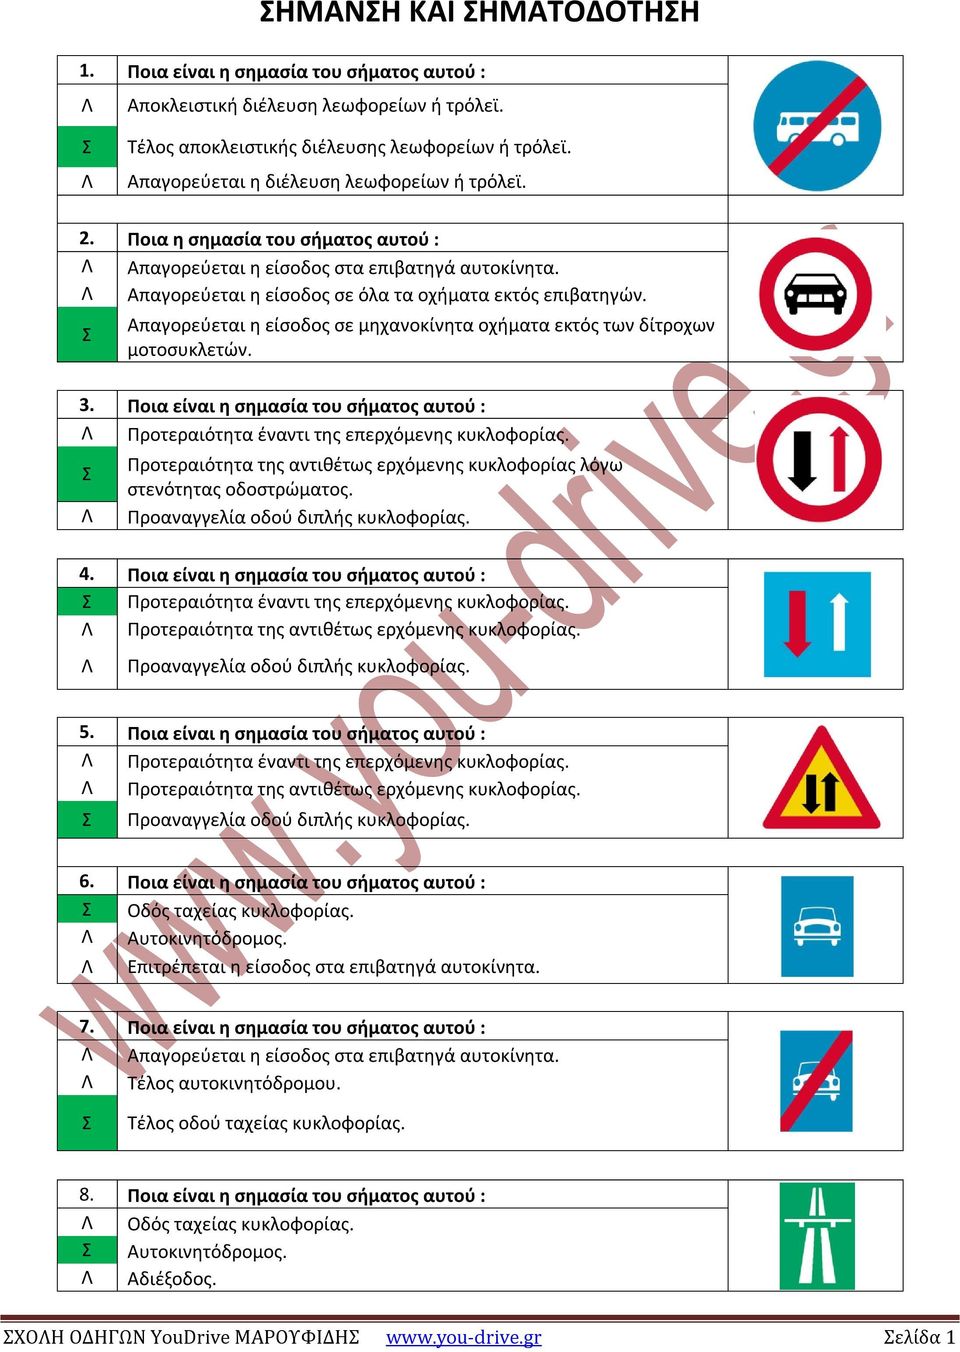 Απαγορεύεται η είσοδος σε μηχανοκίνητα οχήματα εκτός των δίτροχων μοτοσυκλετών. 3. Ποια είναι η σημασία του σήματος αυτού : Προτεραιότητα έναντι της επερχόμενης κυκλοφορίας.